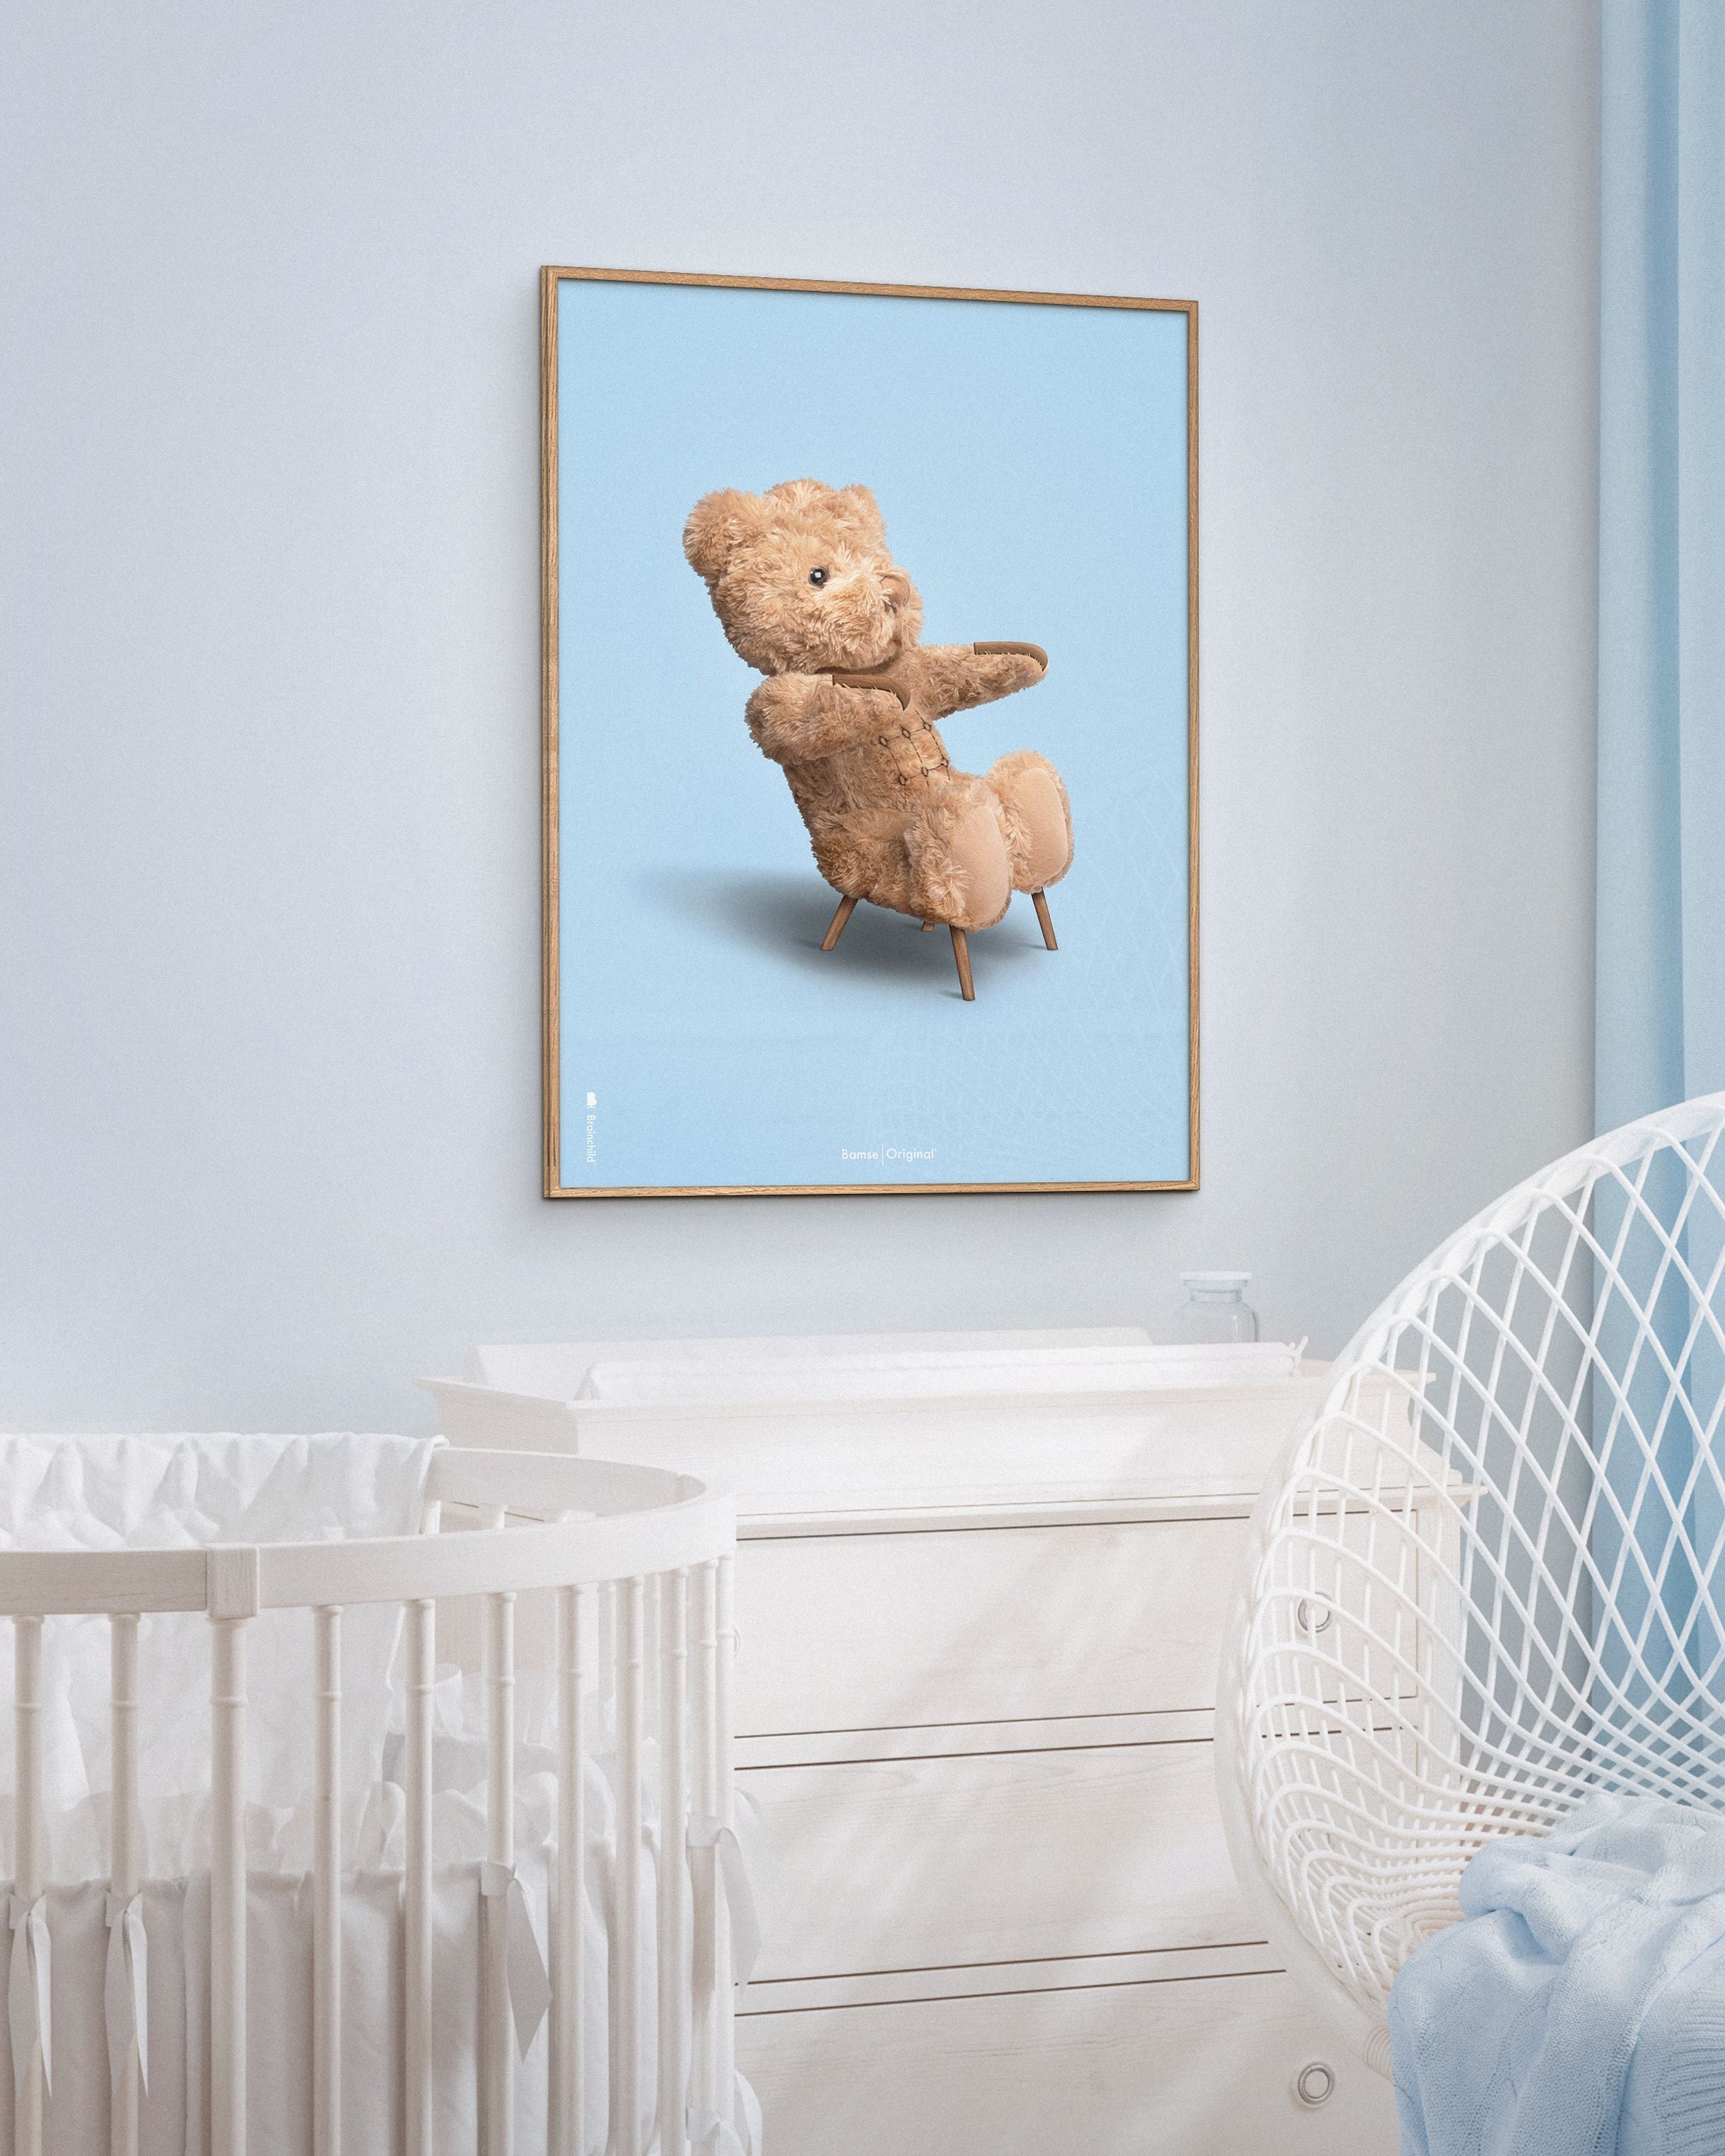 Brainchild Teddy Bear Classic plakát z plakátu vyrobený z světla dřeva 30x40 cm, světle modré pozadí